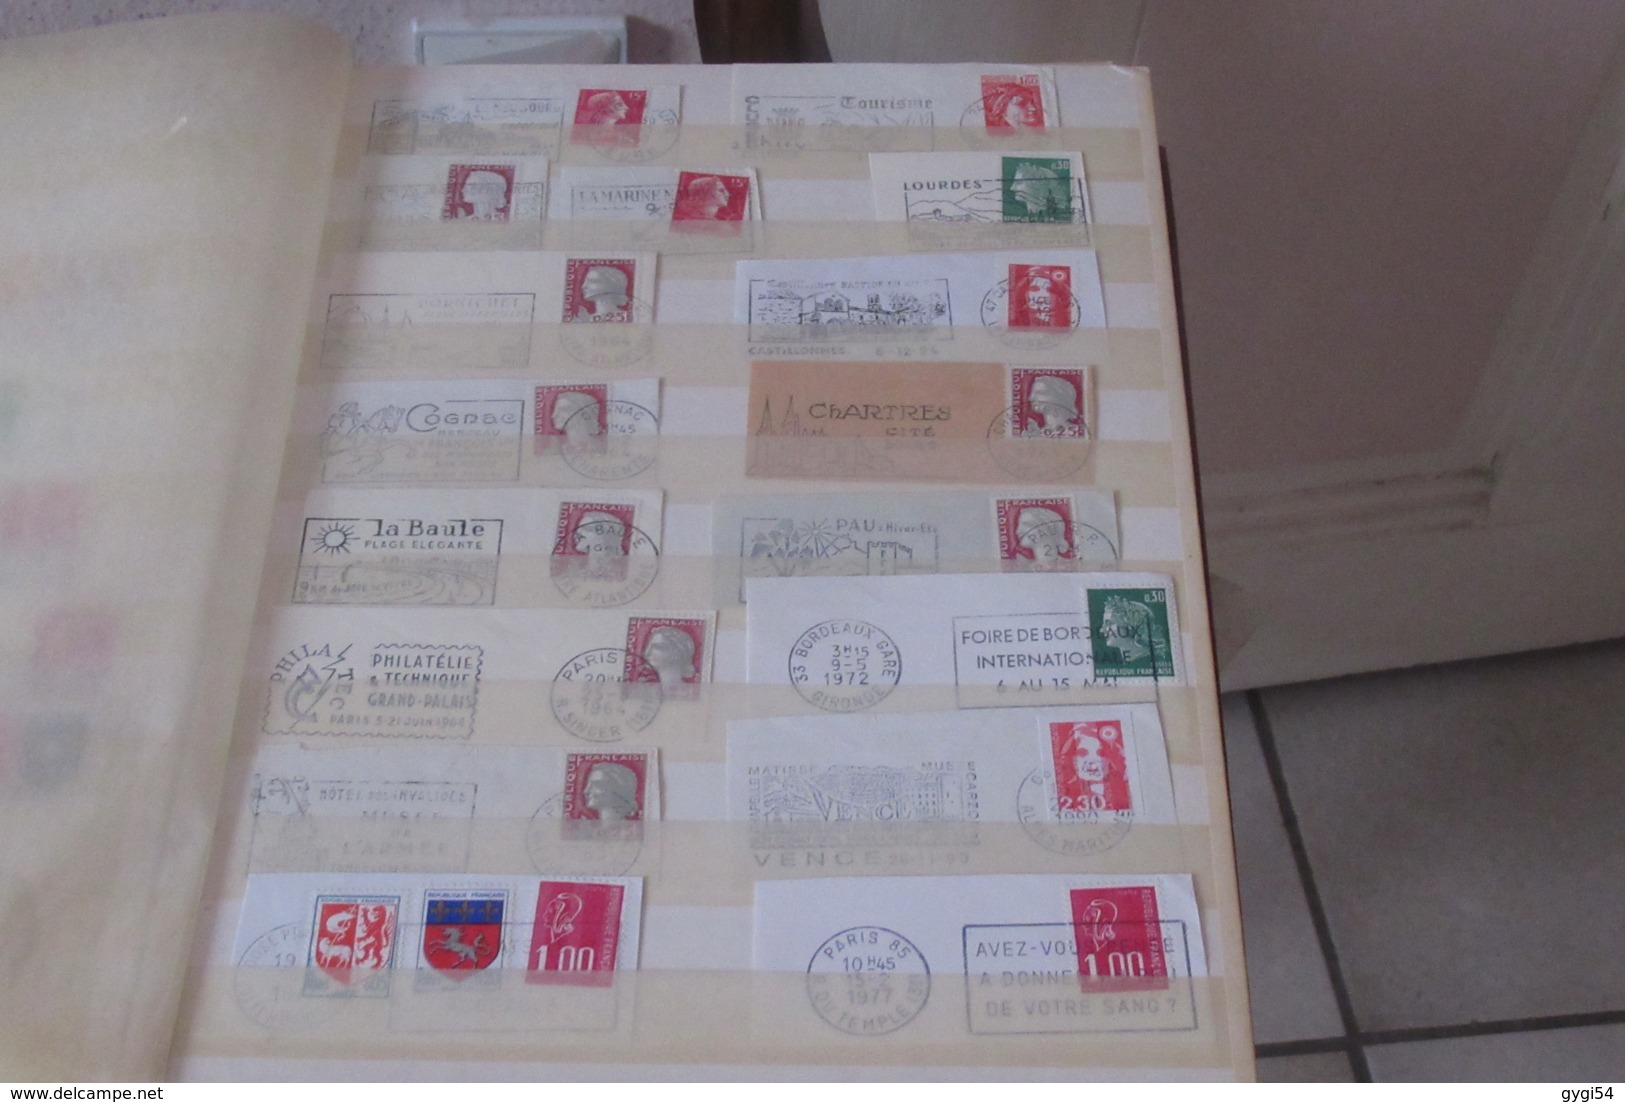 France et Suisse dans un classeur de  32 pages  lot, de timbres oblitérés et Flammes   33   scans